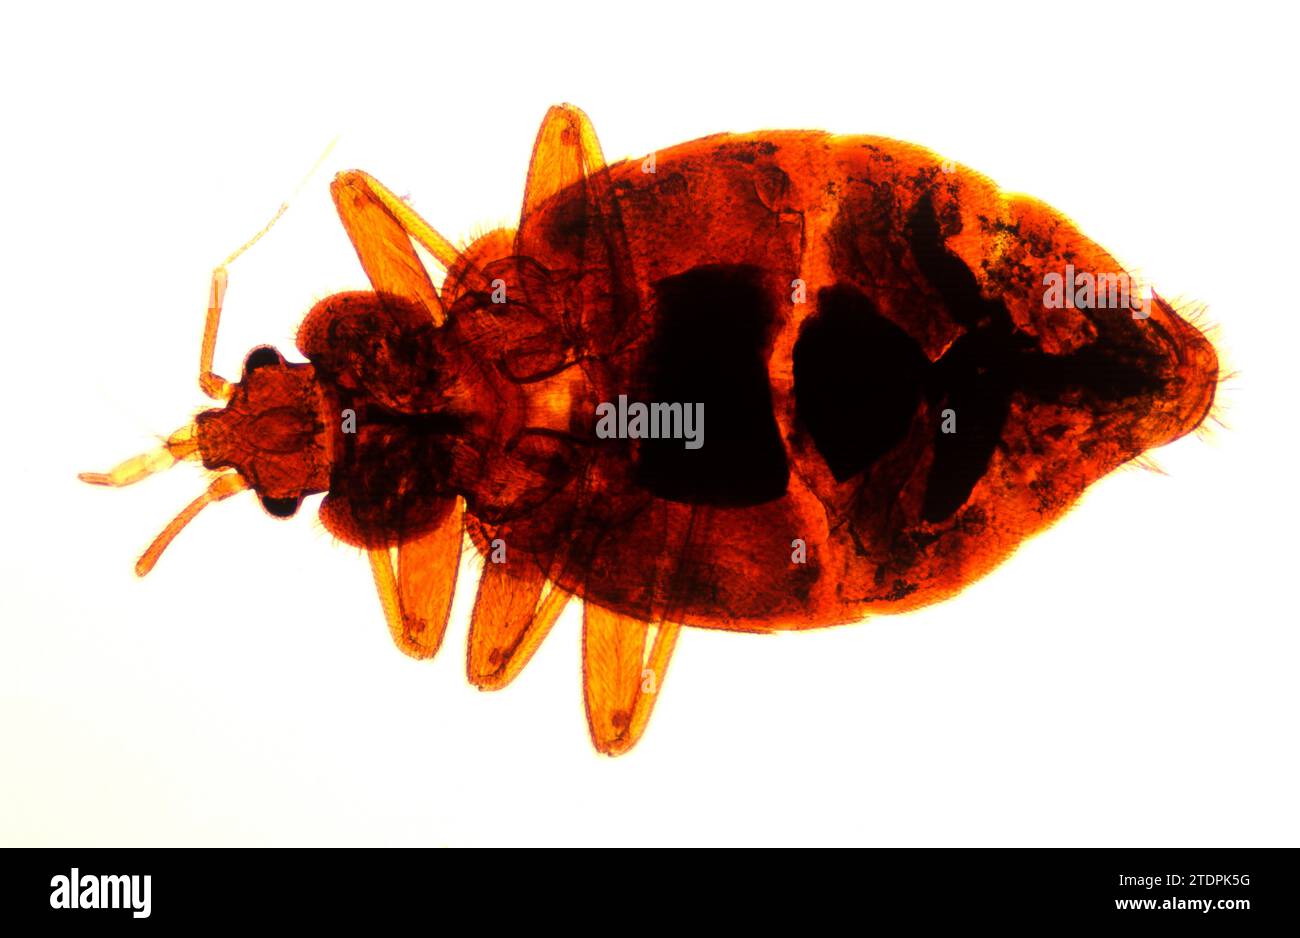 Il baco del letto (Cimex lectularius) è un nell'ectoparassite umana dell'insetto. Fotografia al microscopio. Foto Stock